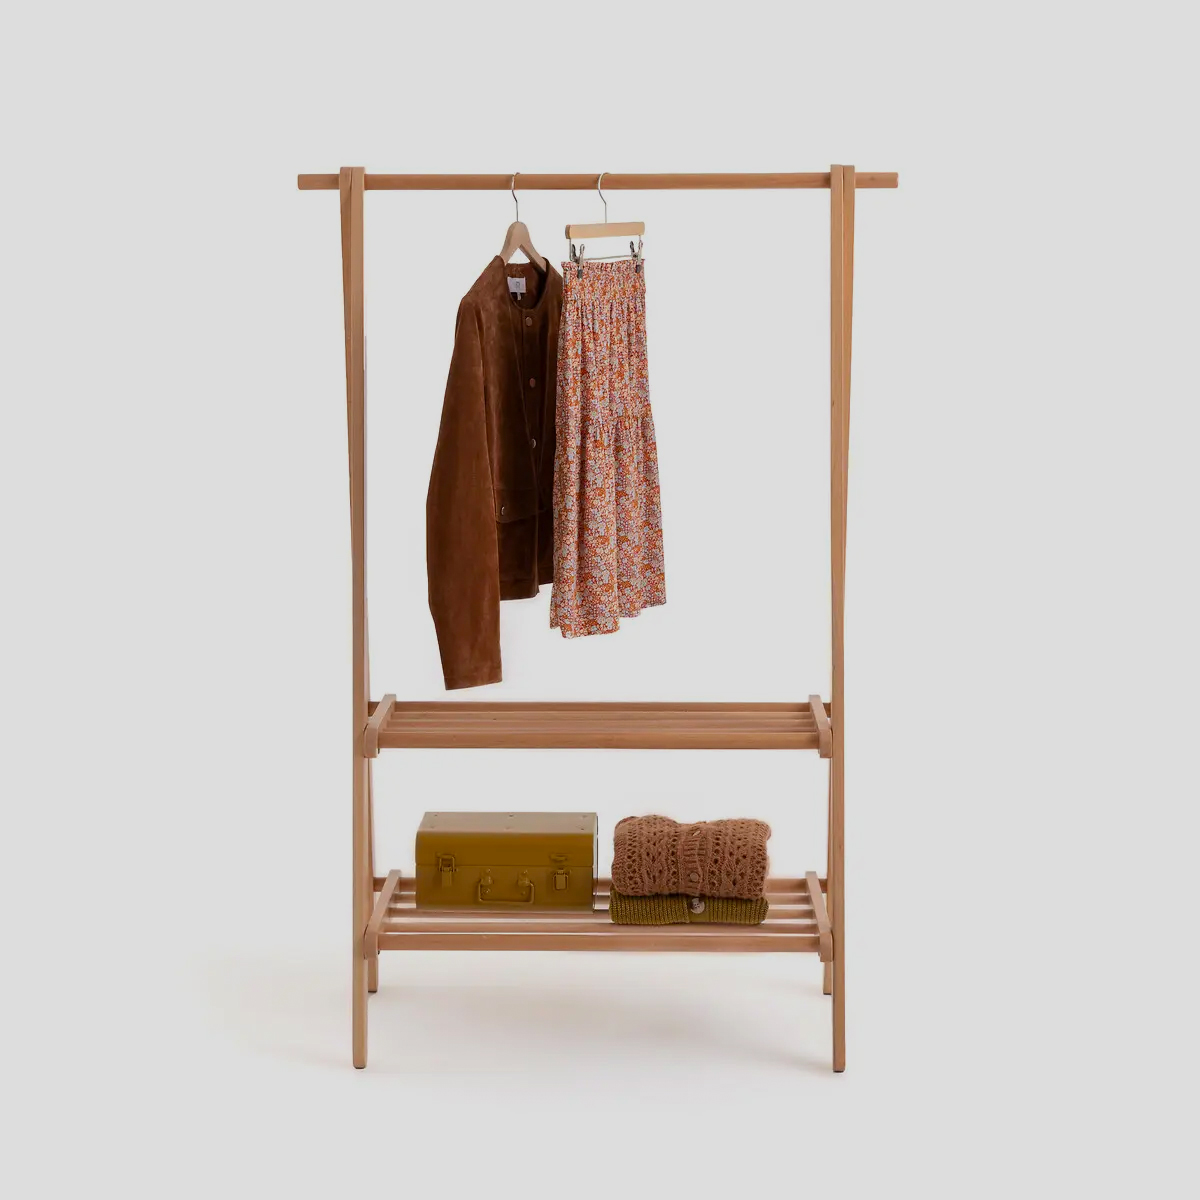 Het sobere design zorgt ervoor dat dit houten kledingrek bij veel verschillende woonstijlen past. 